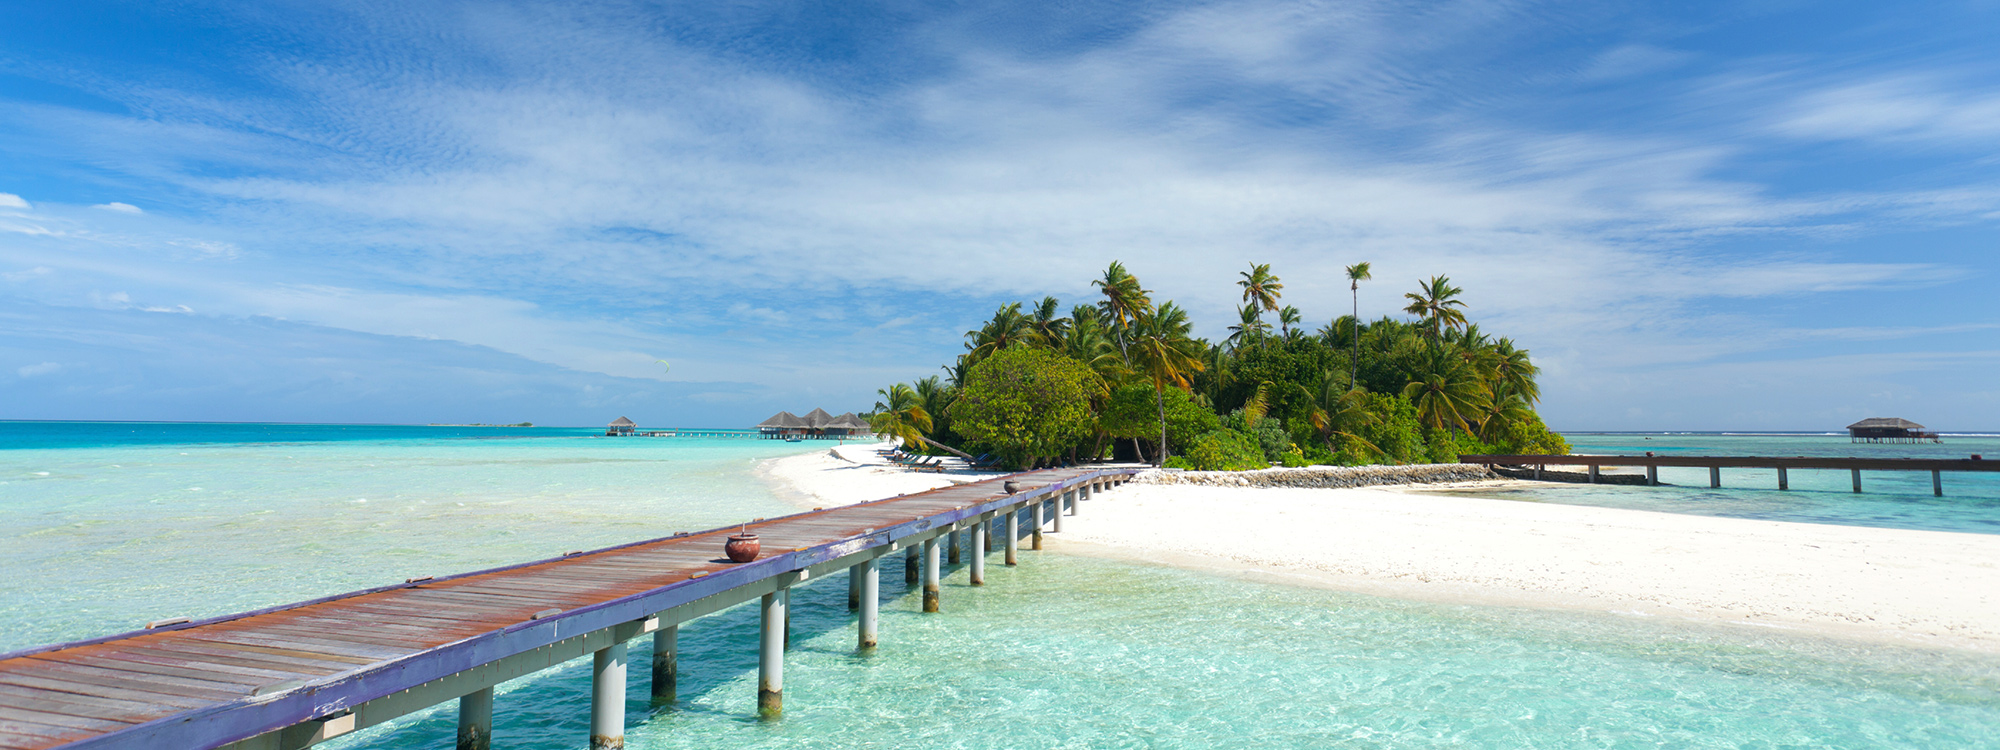 Malediven, Biyadhoo Island vom 2022-09-05 bis 2022-09-12 für 1341 EUR p.P.